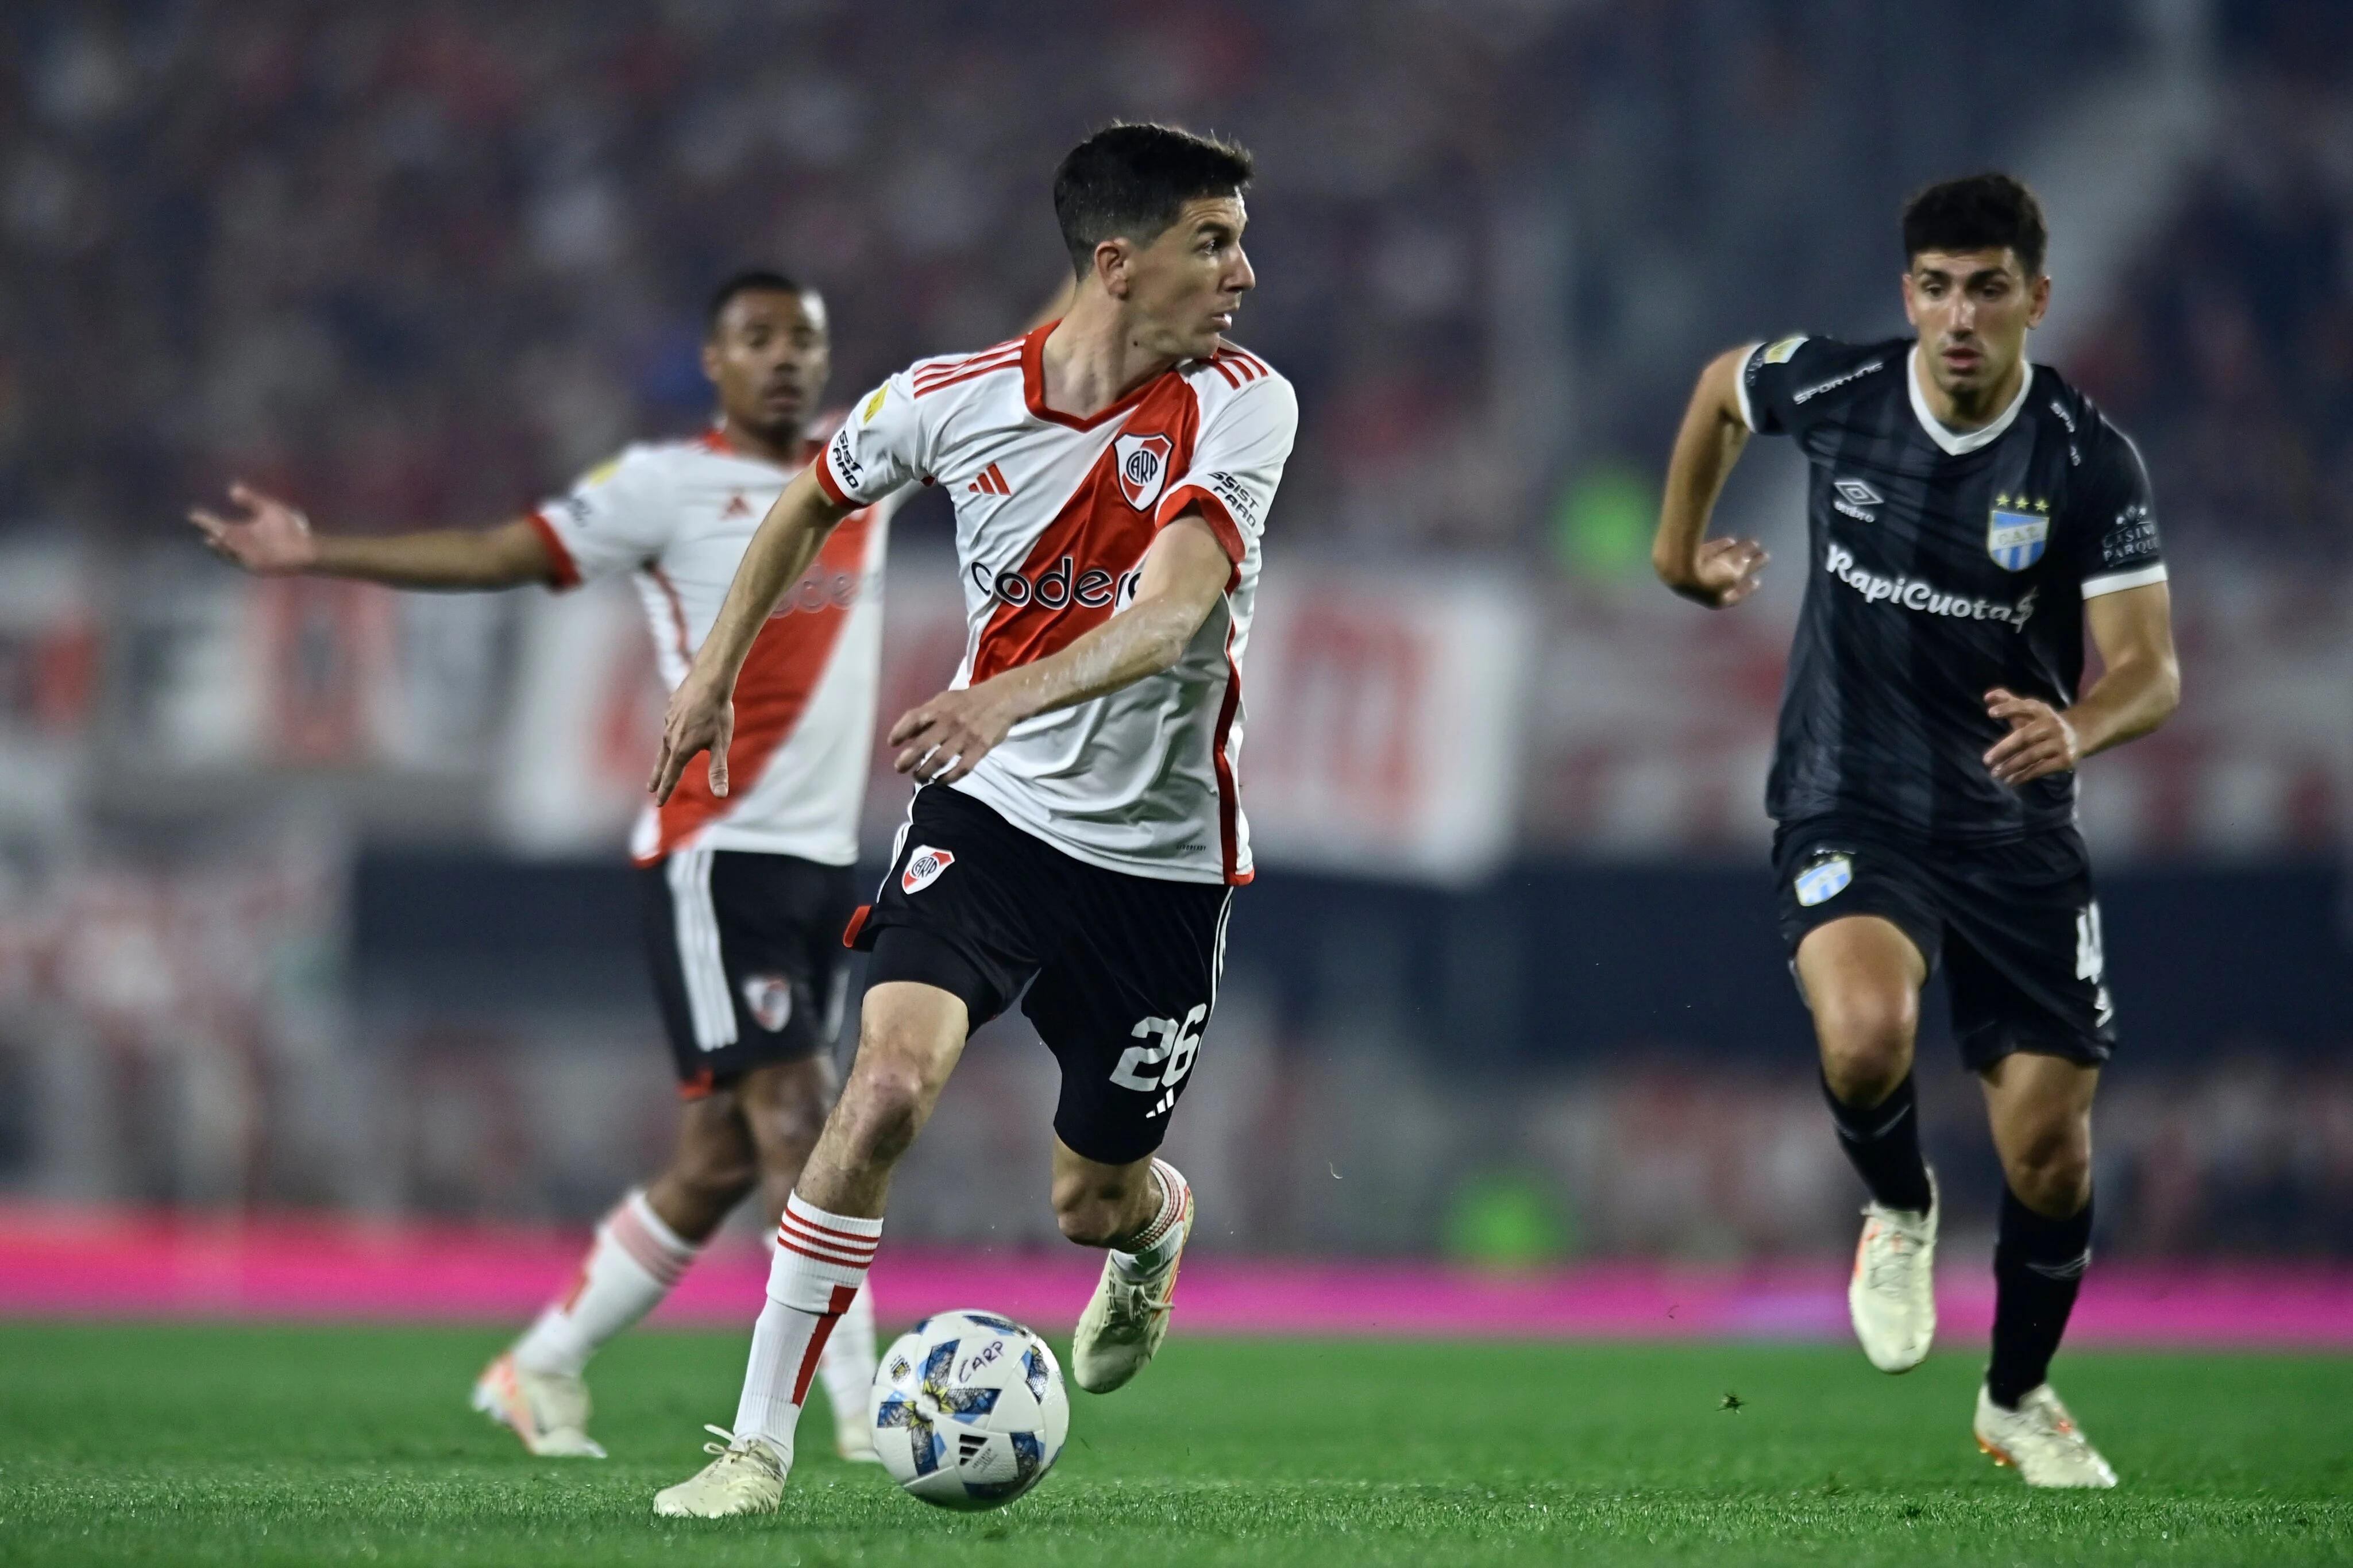 River Plate empata 0-0 con Atlético Tucumán en el cierre de la fecha 5 de la Copa de la Liga